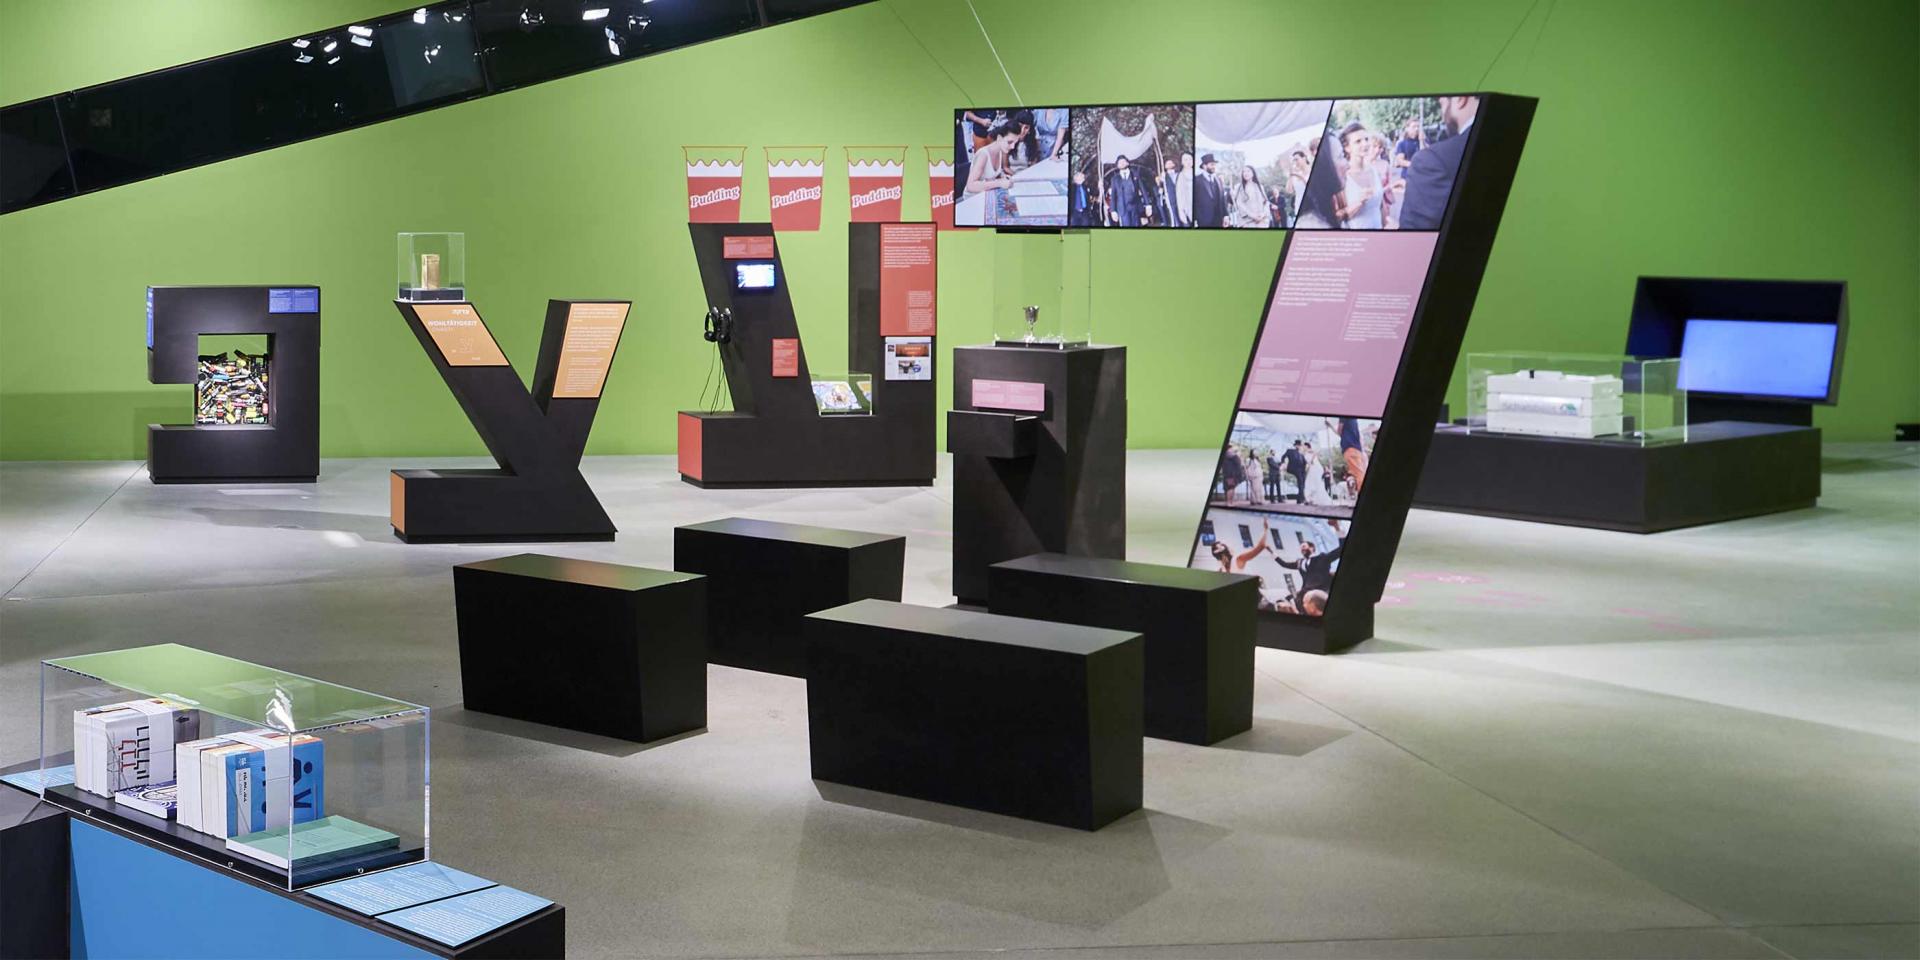 Blick in den Ausstellungsraum mit großen hebräischen Buchstaben